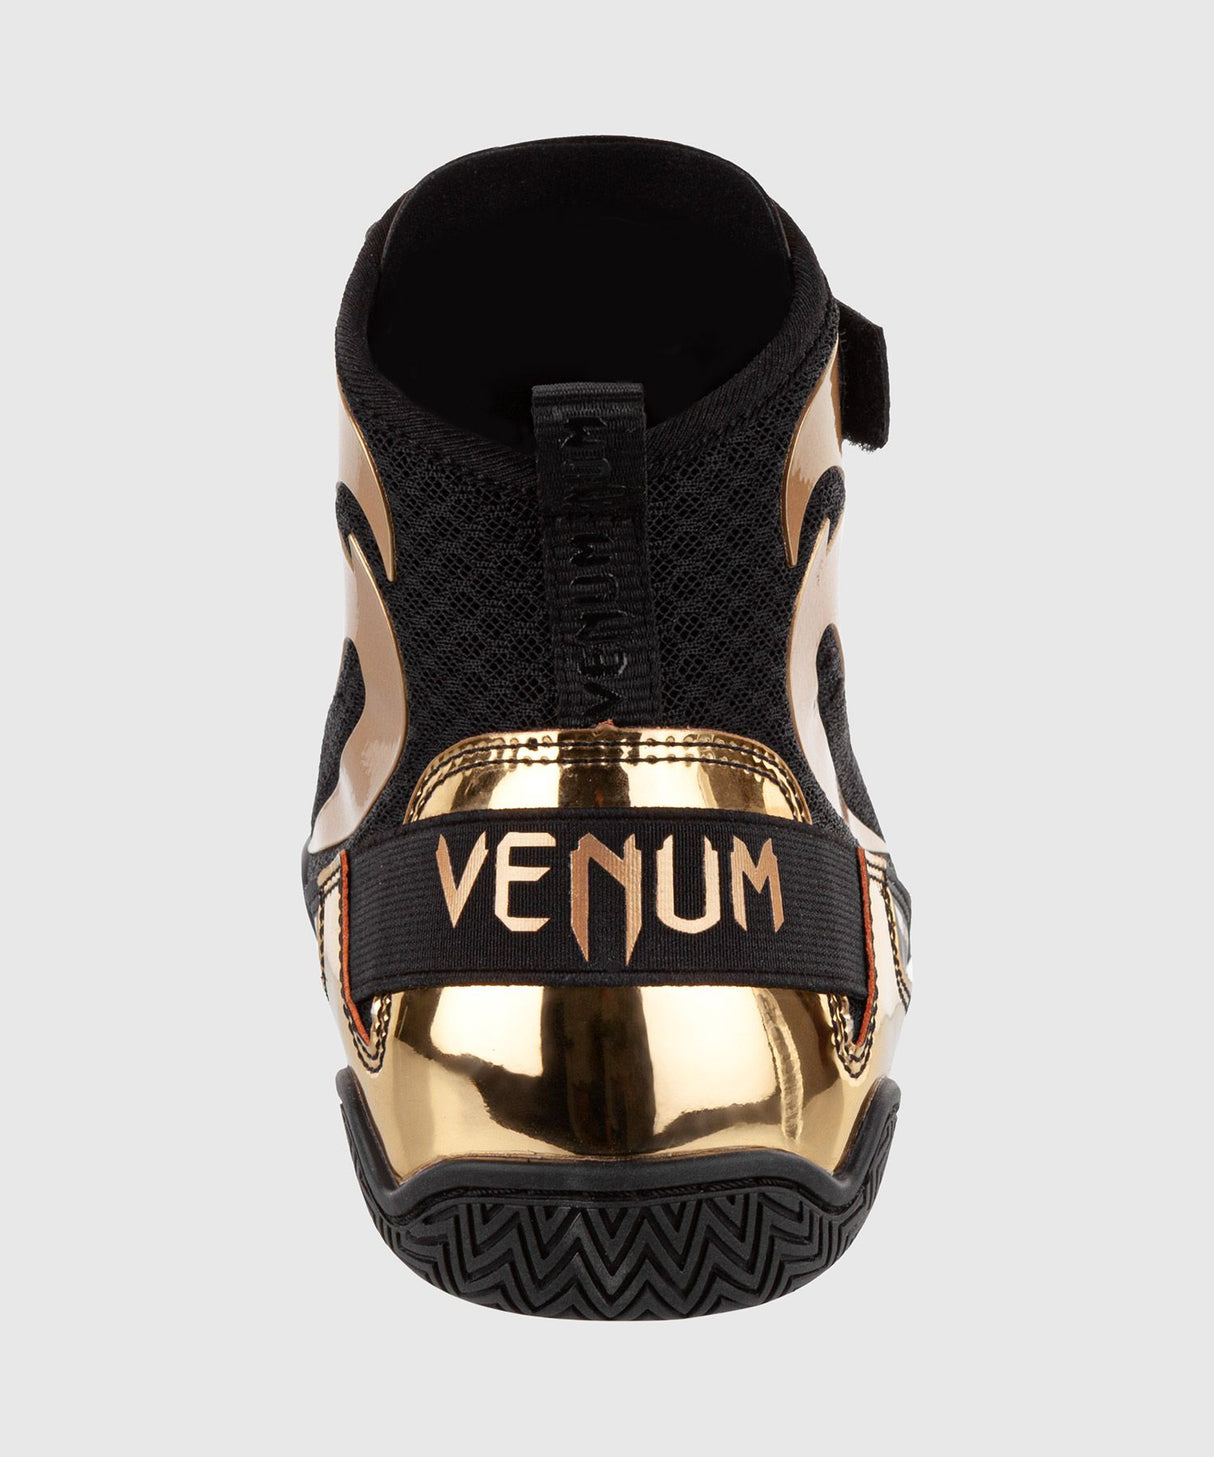 Chaussures de lutte Venum Giant - noir/or, VENUM-03910-126